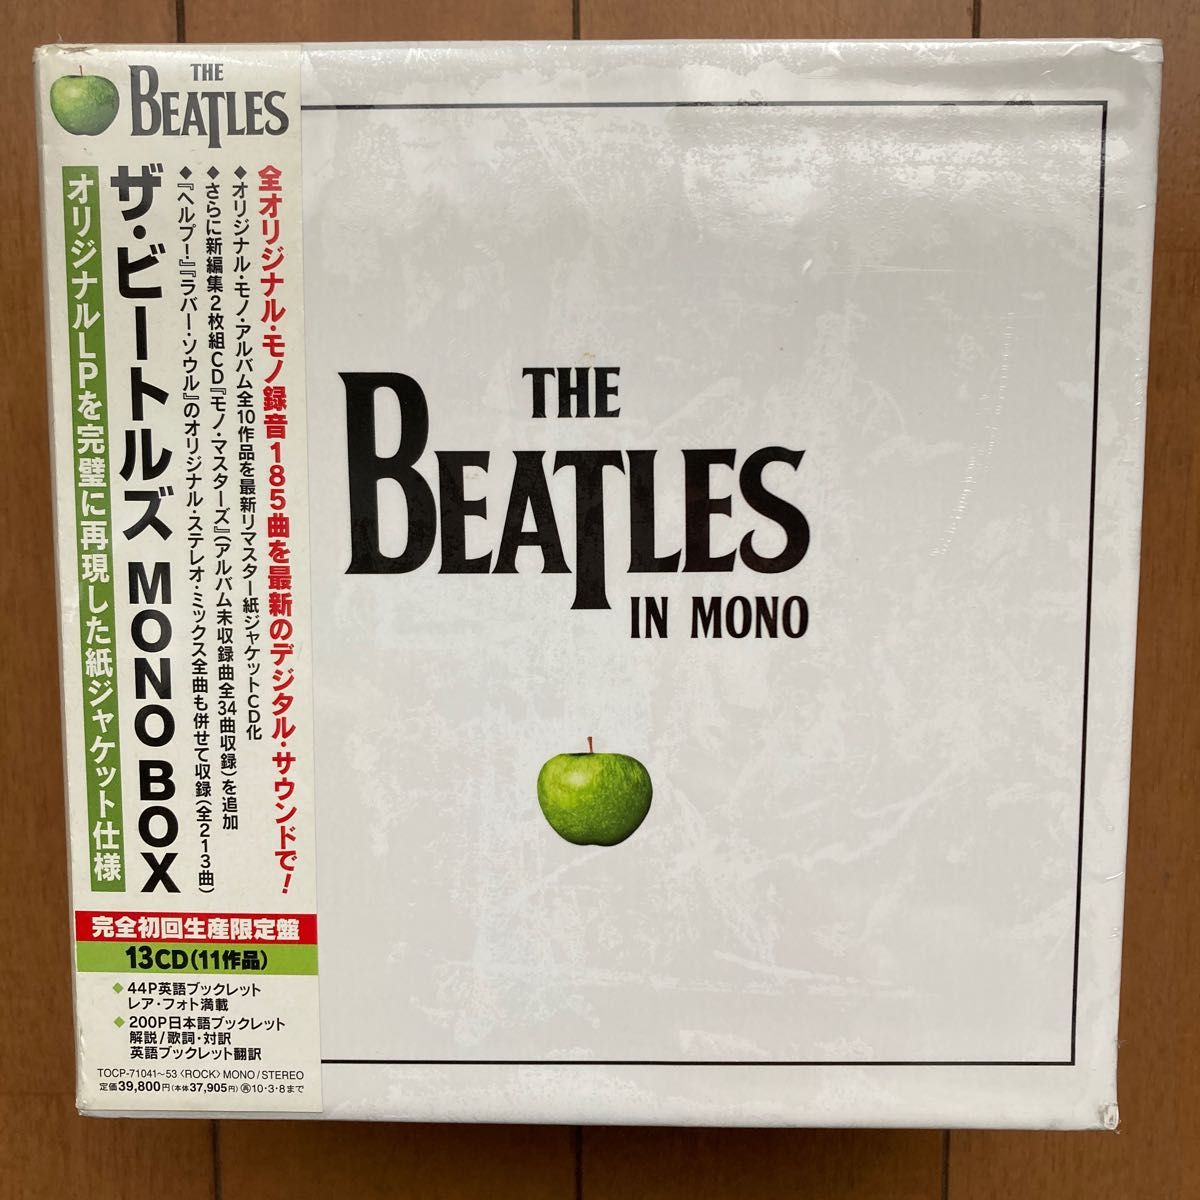 【新品未開封】ザ・ビートルズ THE BEATLES / 初回生産限定盤 MONO ボックス